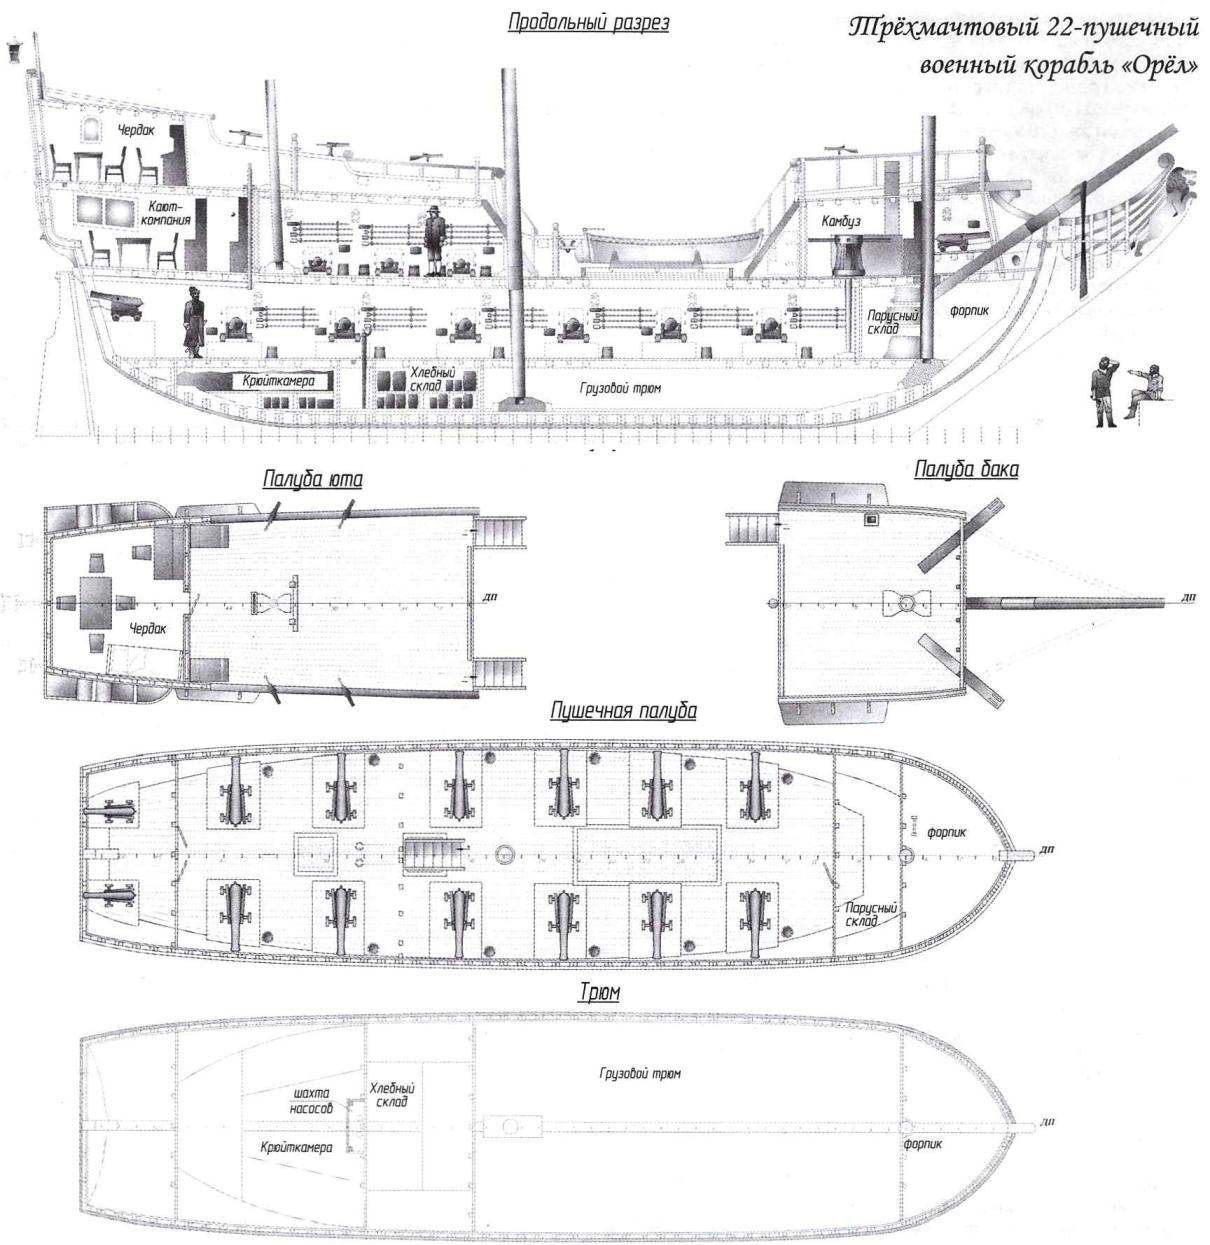 Трёхмачтовый 22-пушечный военный корабль «Орёл»